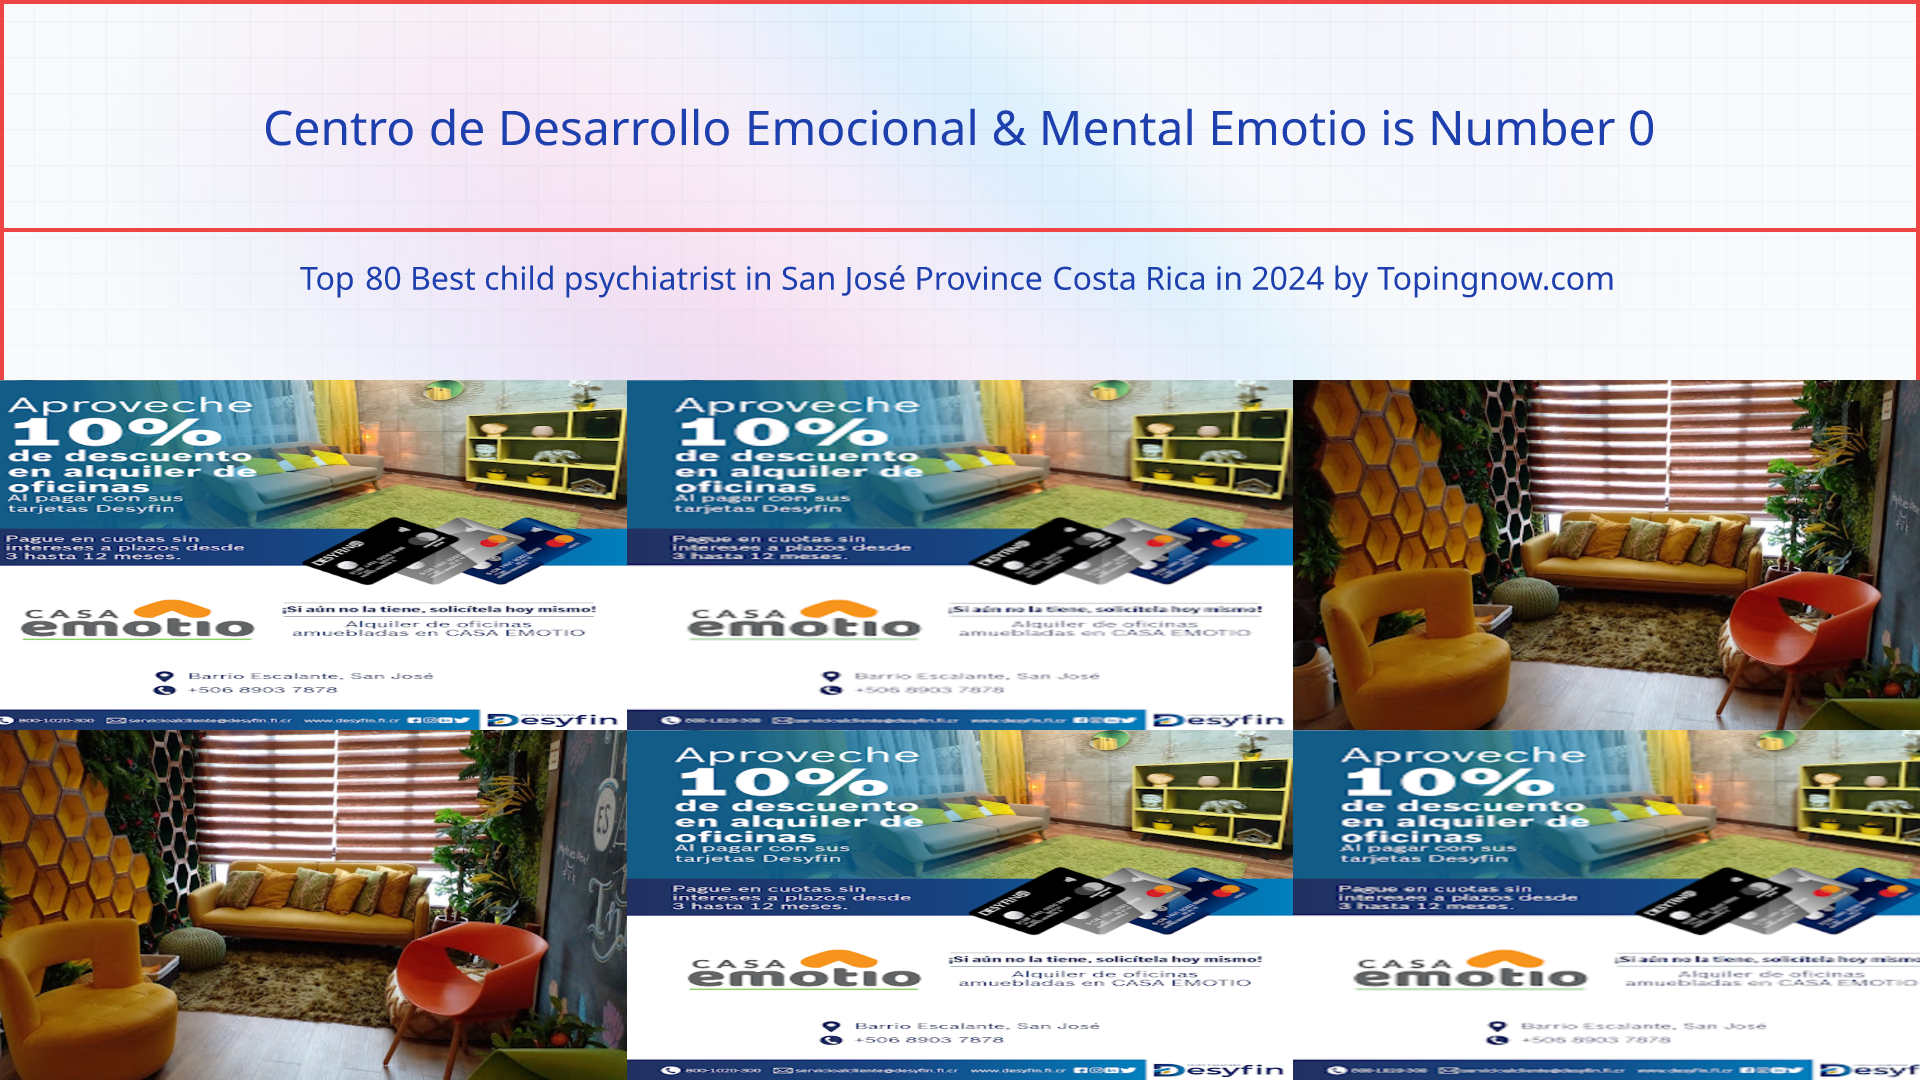 Centro de Desarrollo Emocional & Mental Emotio: Top 80 Best child psychiatrist in San José Province Costa Rica in 2024